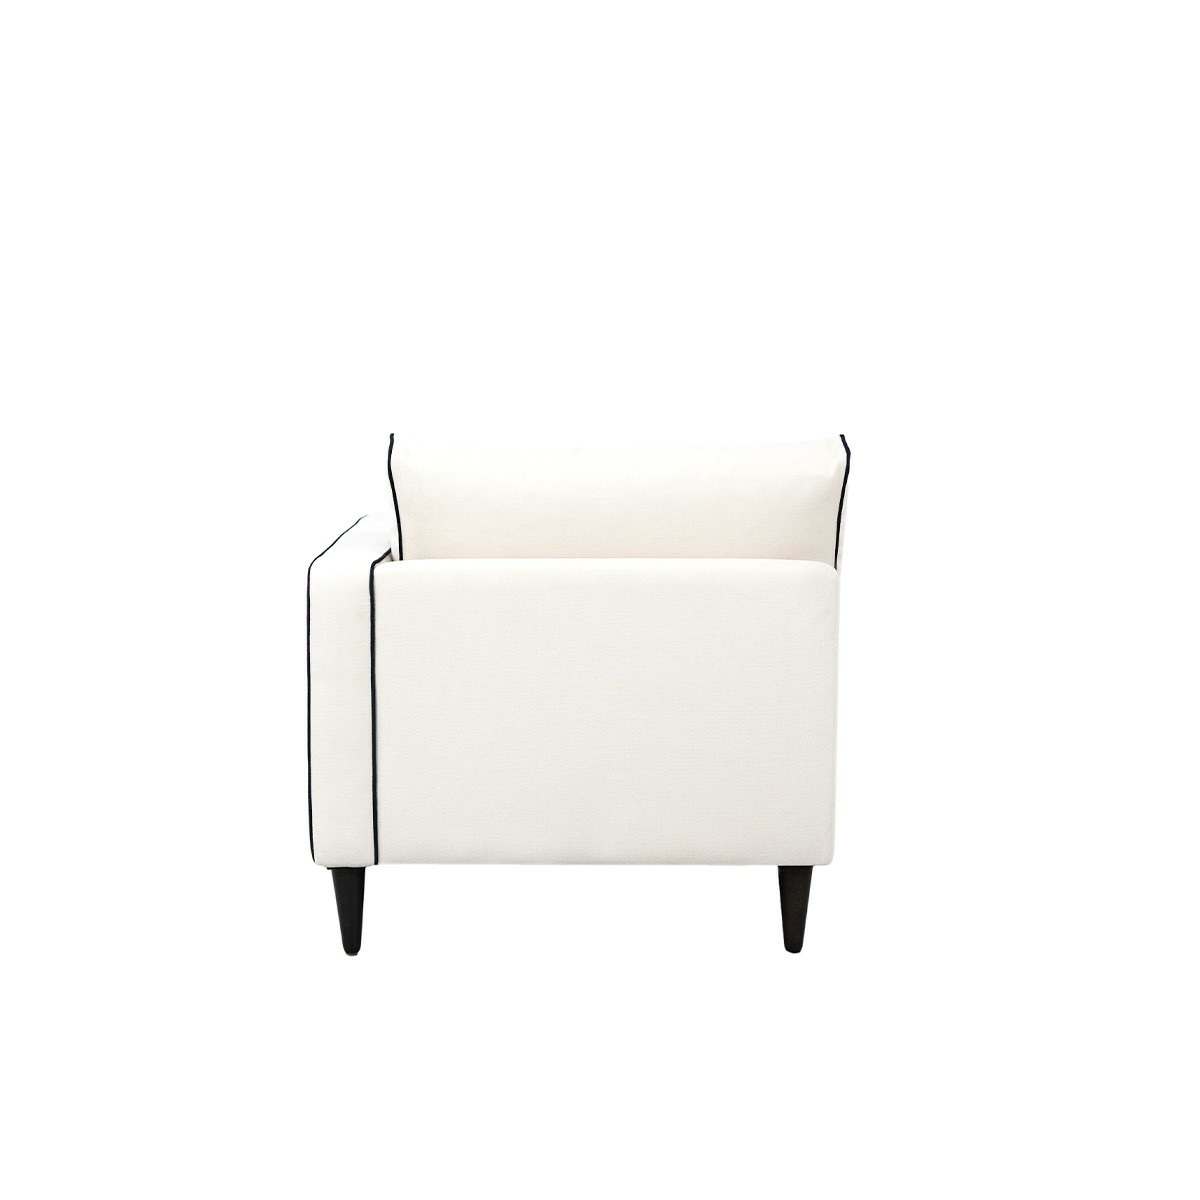 Noa sofa - Right armrest, L150 x P80 x H75 cm - Cotton - image 6